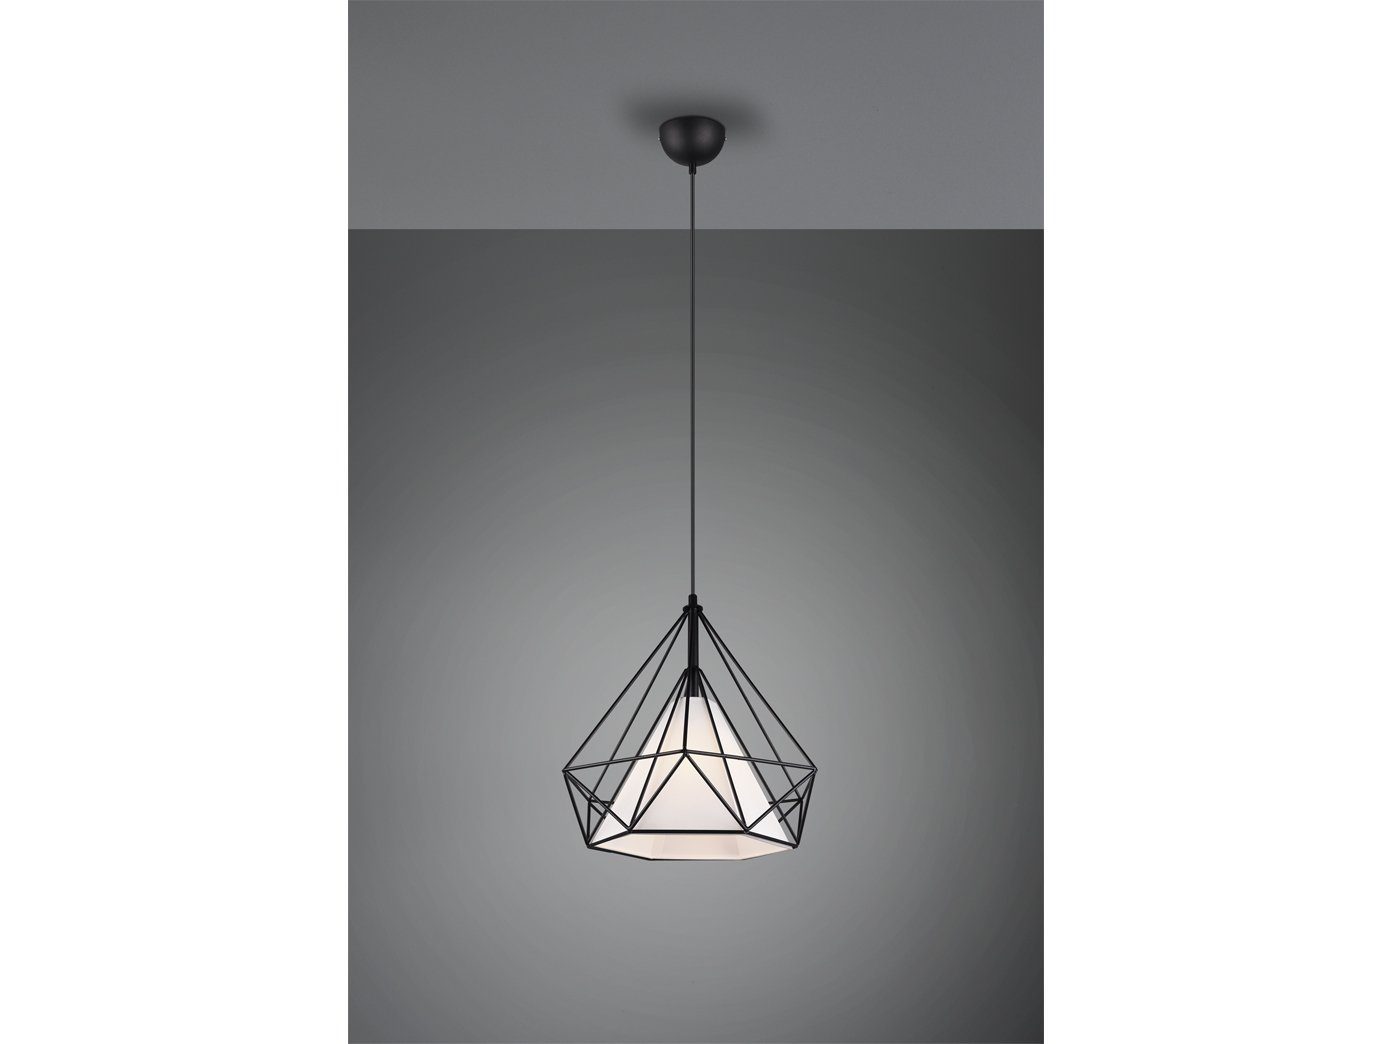 TRIO LED Pendelleuchte, Industrial Style Draht Gitter Lampe Decken Leuchte Industrie Lampe Esszimmer Lampe für über Esstisch Kücheninsel Couchtisch